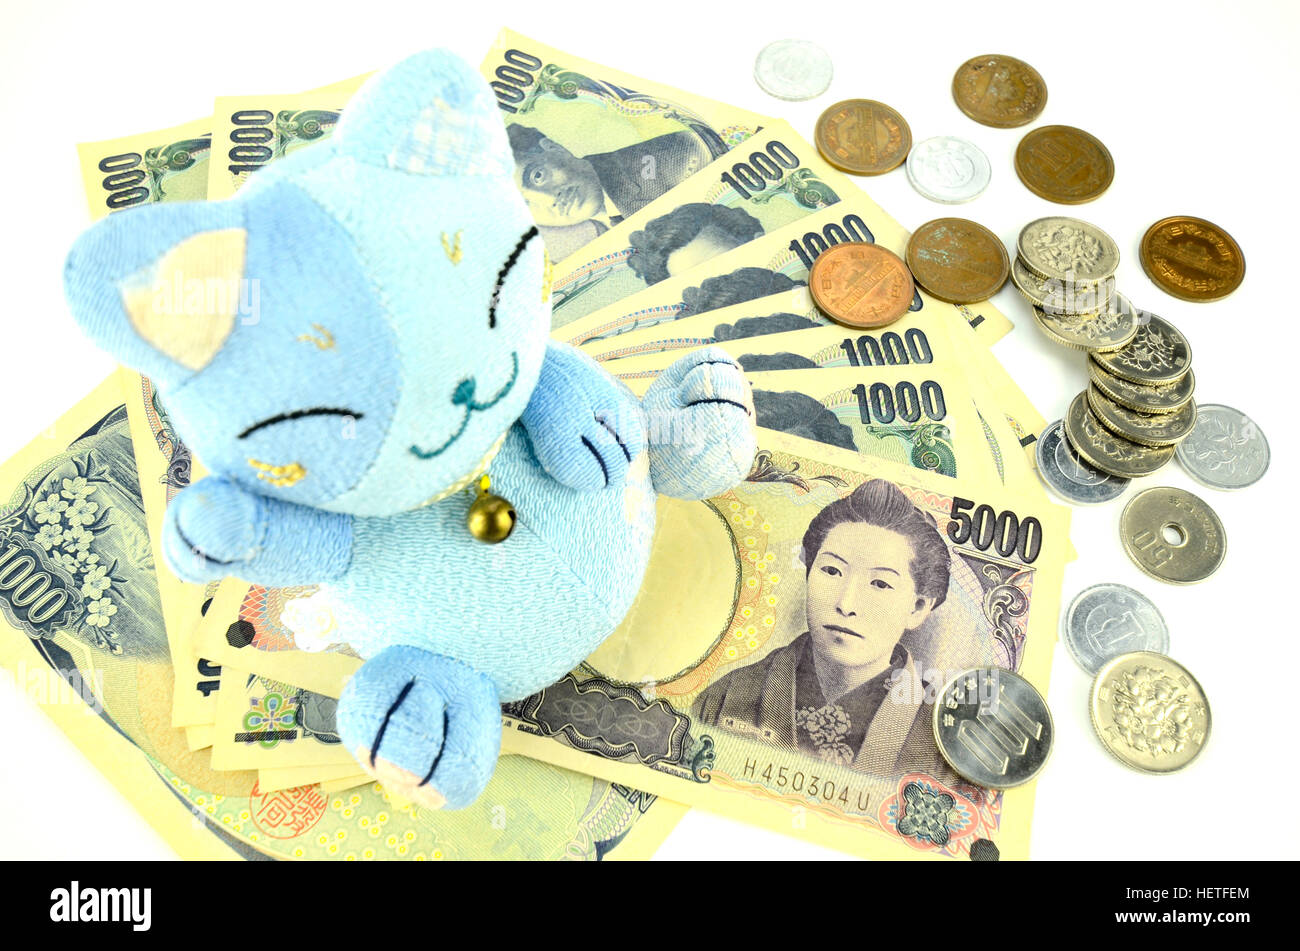 Maneki-neko, the lucky cat and Japanese money. Stock Photo